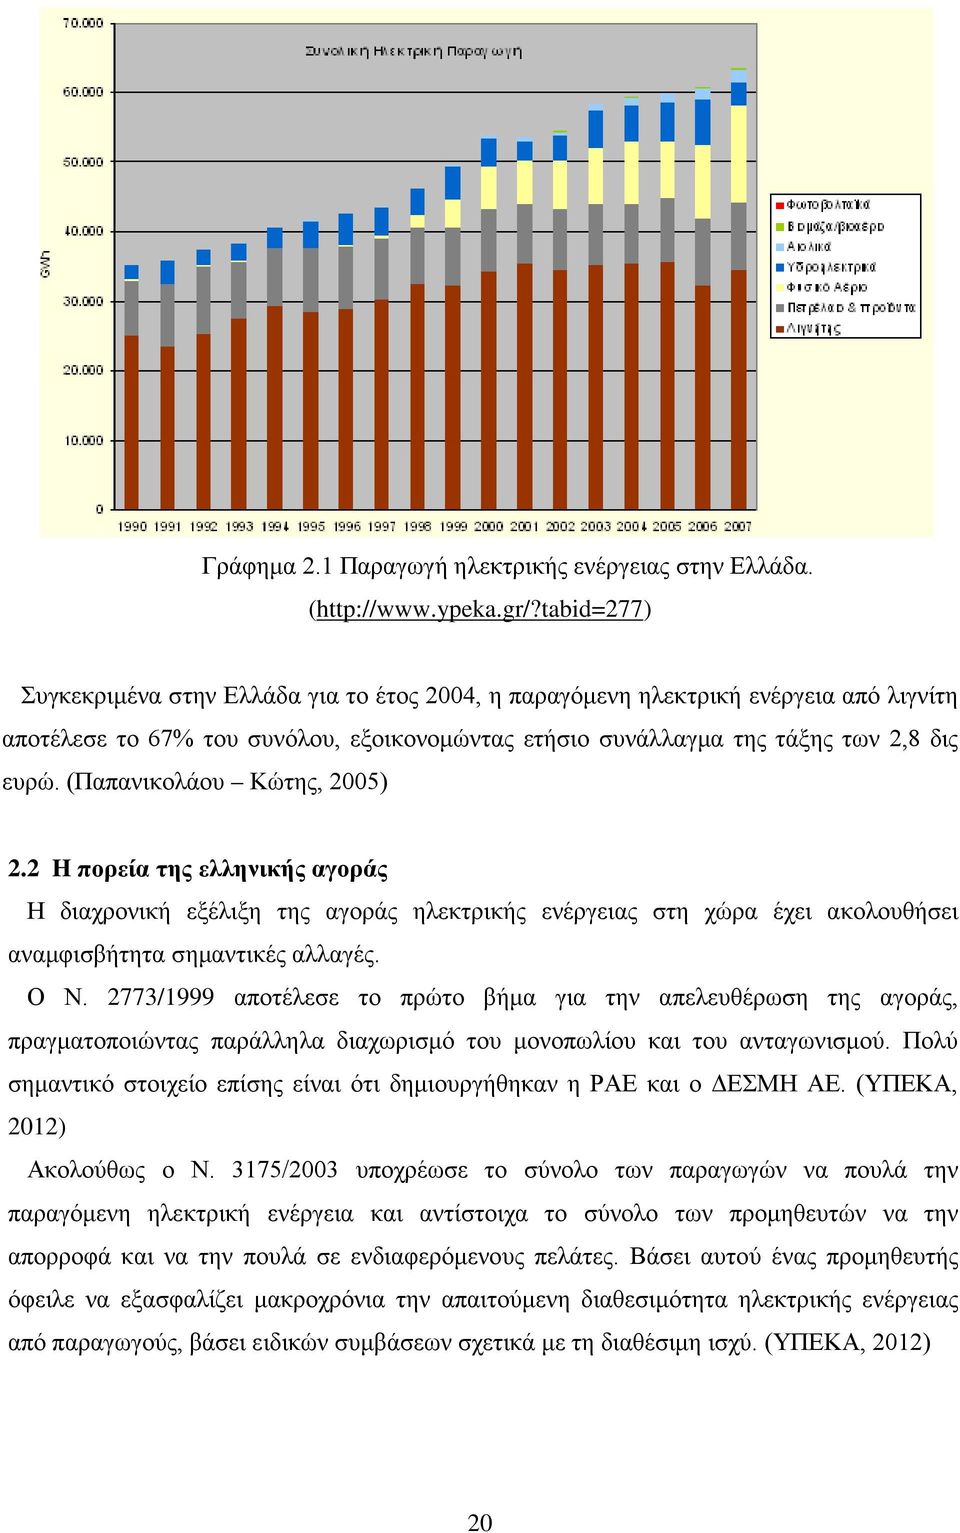 (Παπανικολάου Κώτης, 2005) 2.2 H πορεία της ελληνικής αγοράς Η διαχρονική εξέλιξη της αγοράς ηλεκτρικής ενέργειας στη χώρα έχει ακολουθήσει αναμφισβήτητα σημαντικές αλλαγές. Ο Ν.